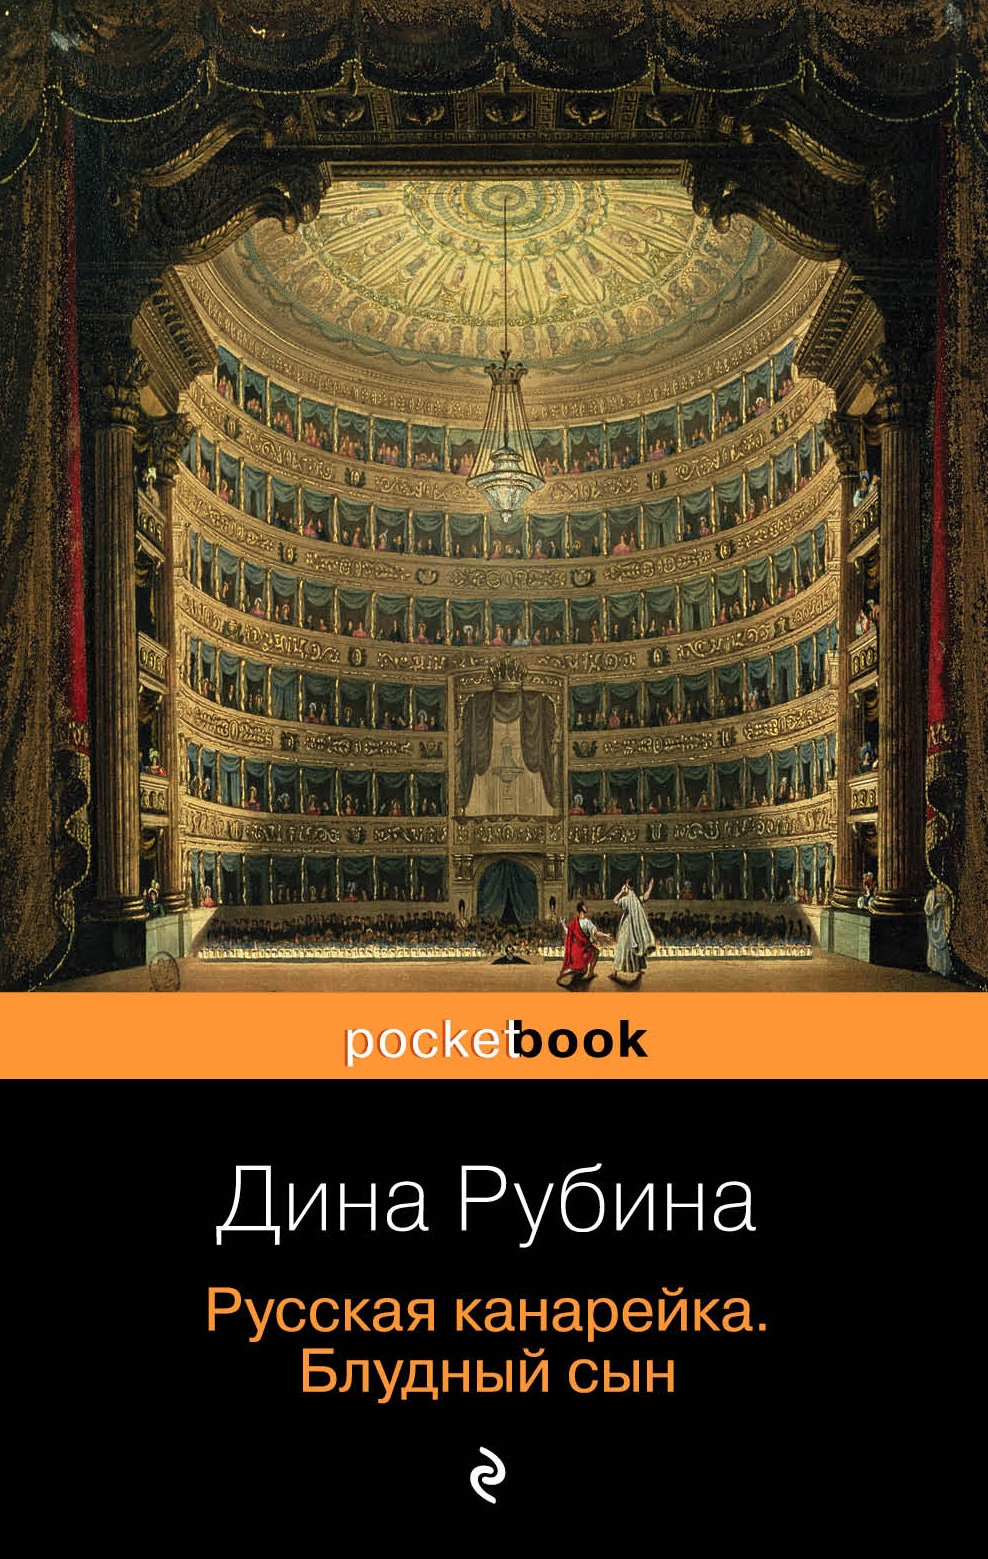 Book “Русская канарейка. Блудный сын” by Дина Рубина — June 21, 2019